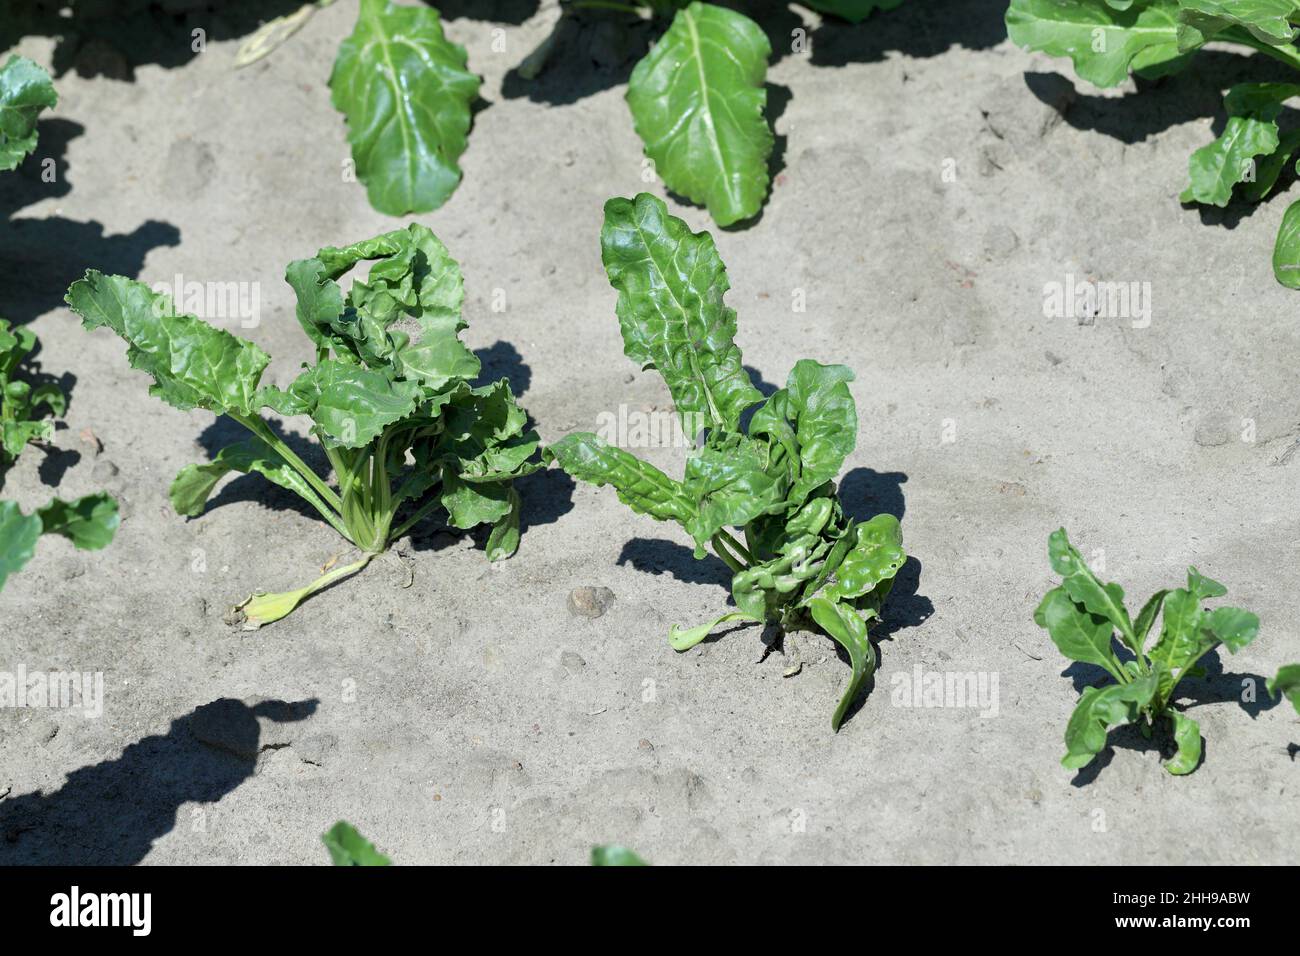 Rübenpflanzen, die durch Pflanzenschutzmittel beschädigt werden - Phytotoxizität, deformierte Pflanzen. Stockfoto